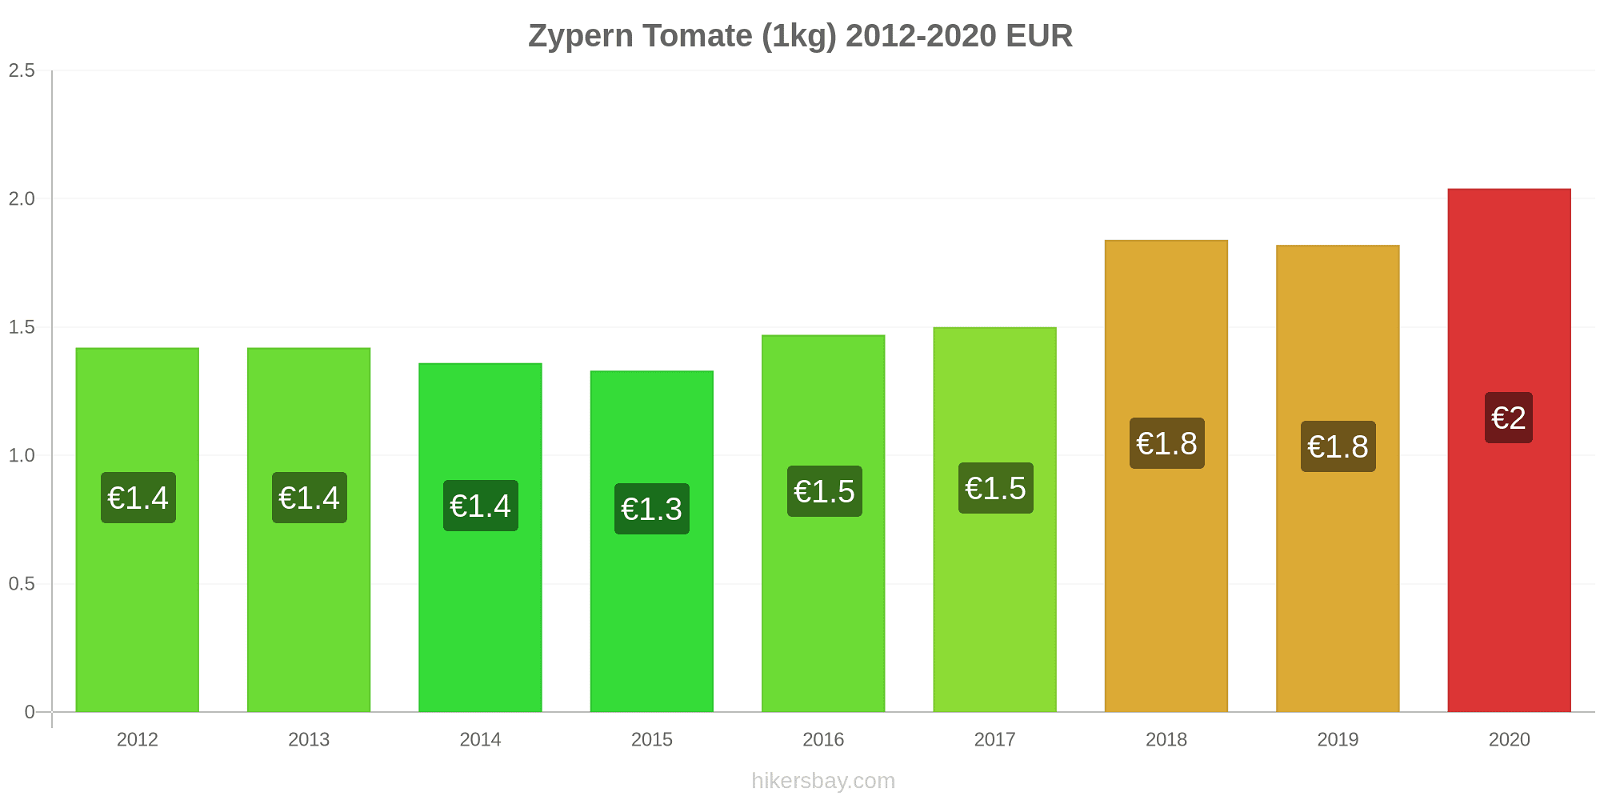 Zypern Preisänderungen Tomaten (1kg) hikersbay.com